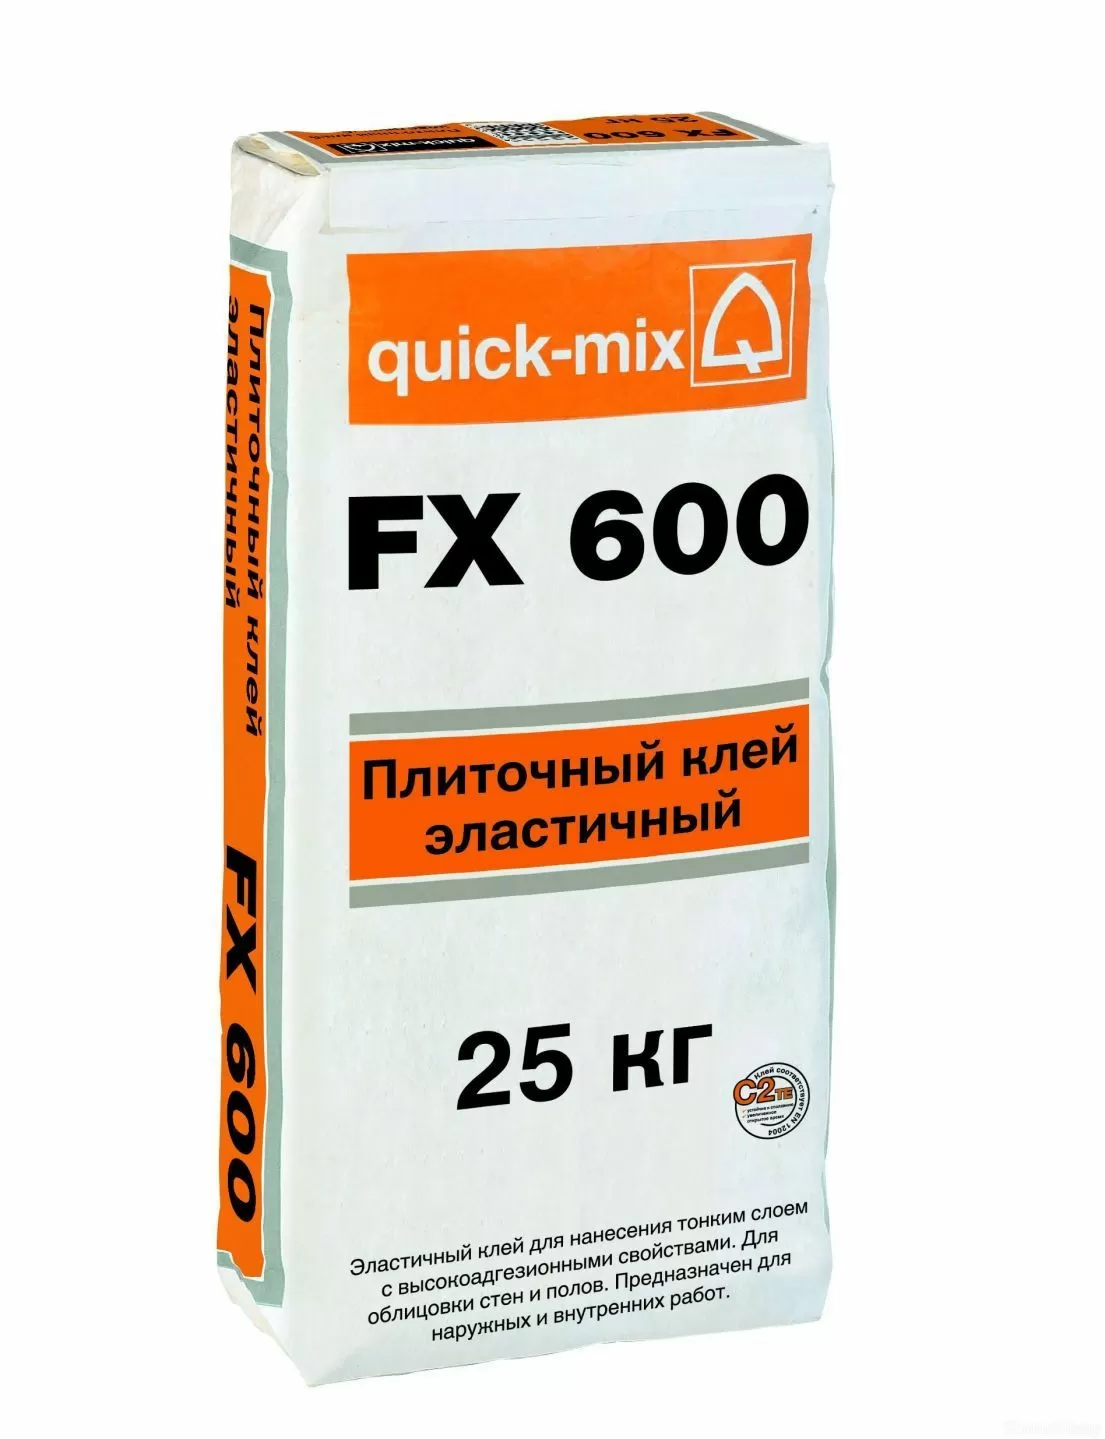 Плиточный клей quick-mix FX 600 фото